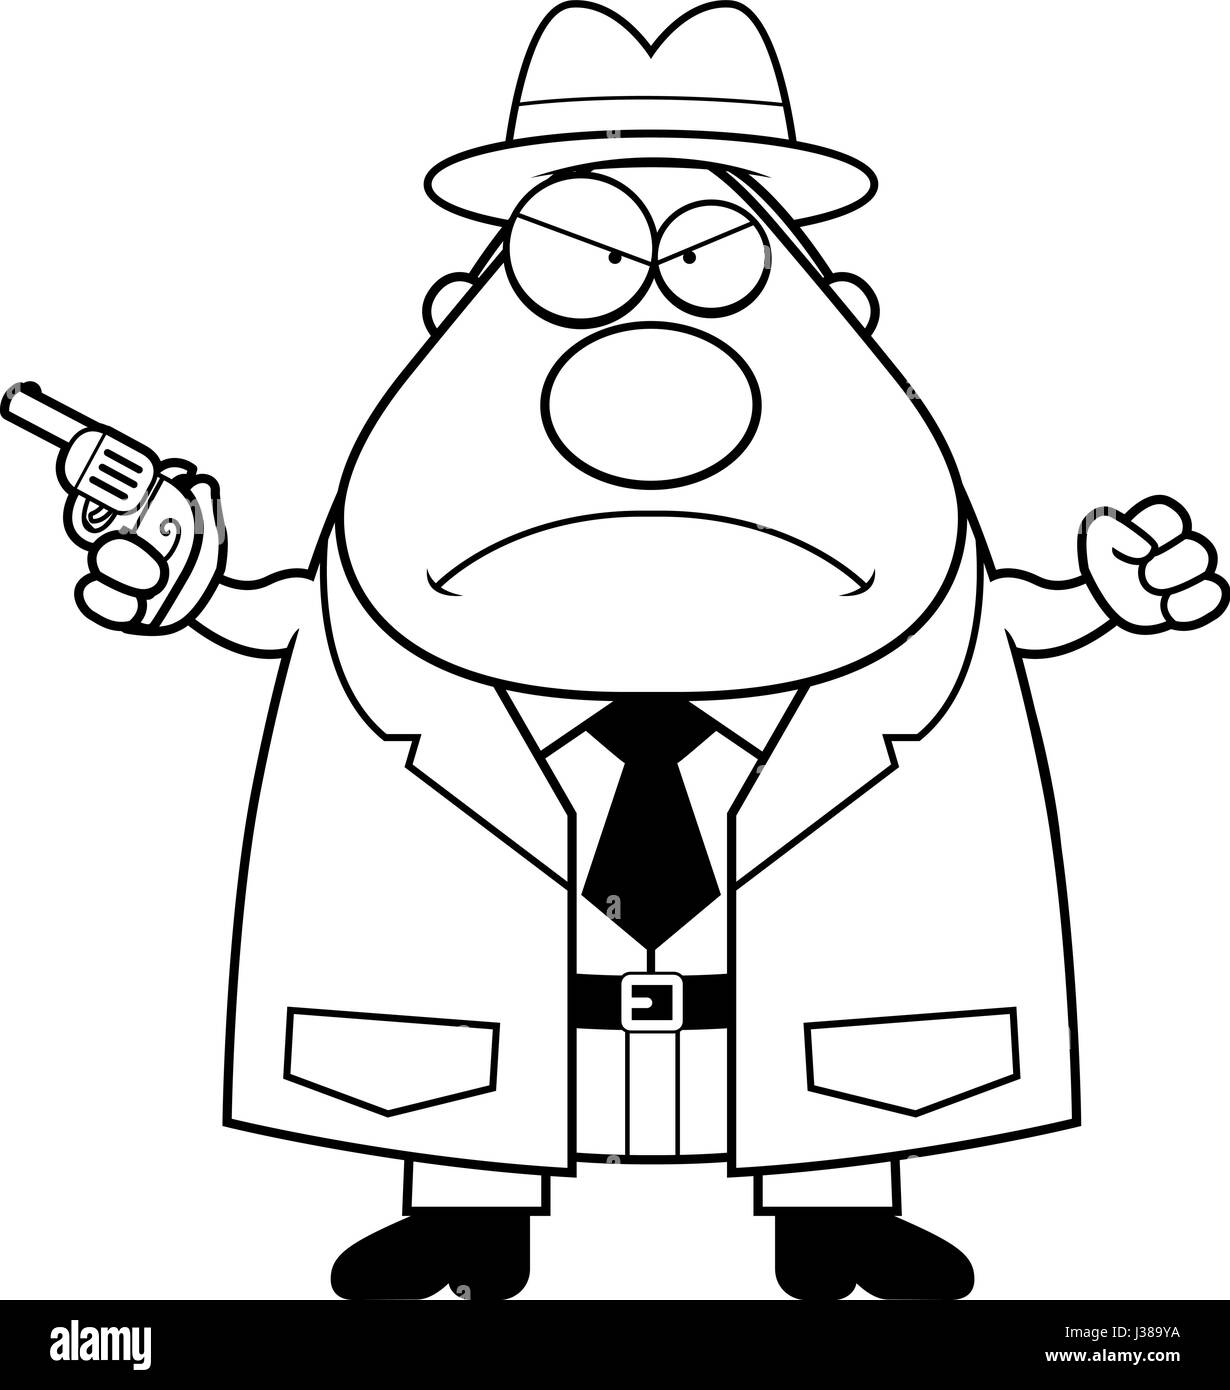 Eine Karikatur Illustration eines Detektivs suchen Sie wütend mit einem Gewehr. Stock Vektor